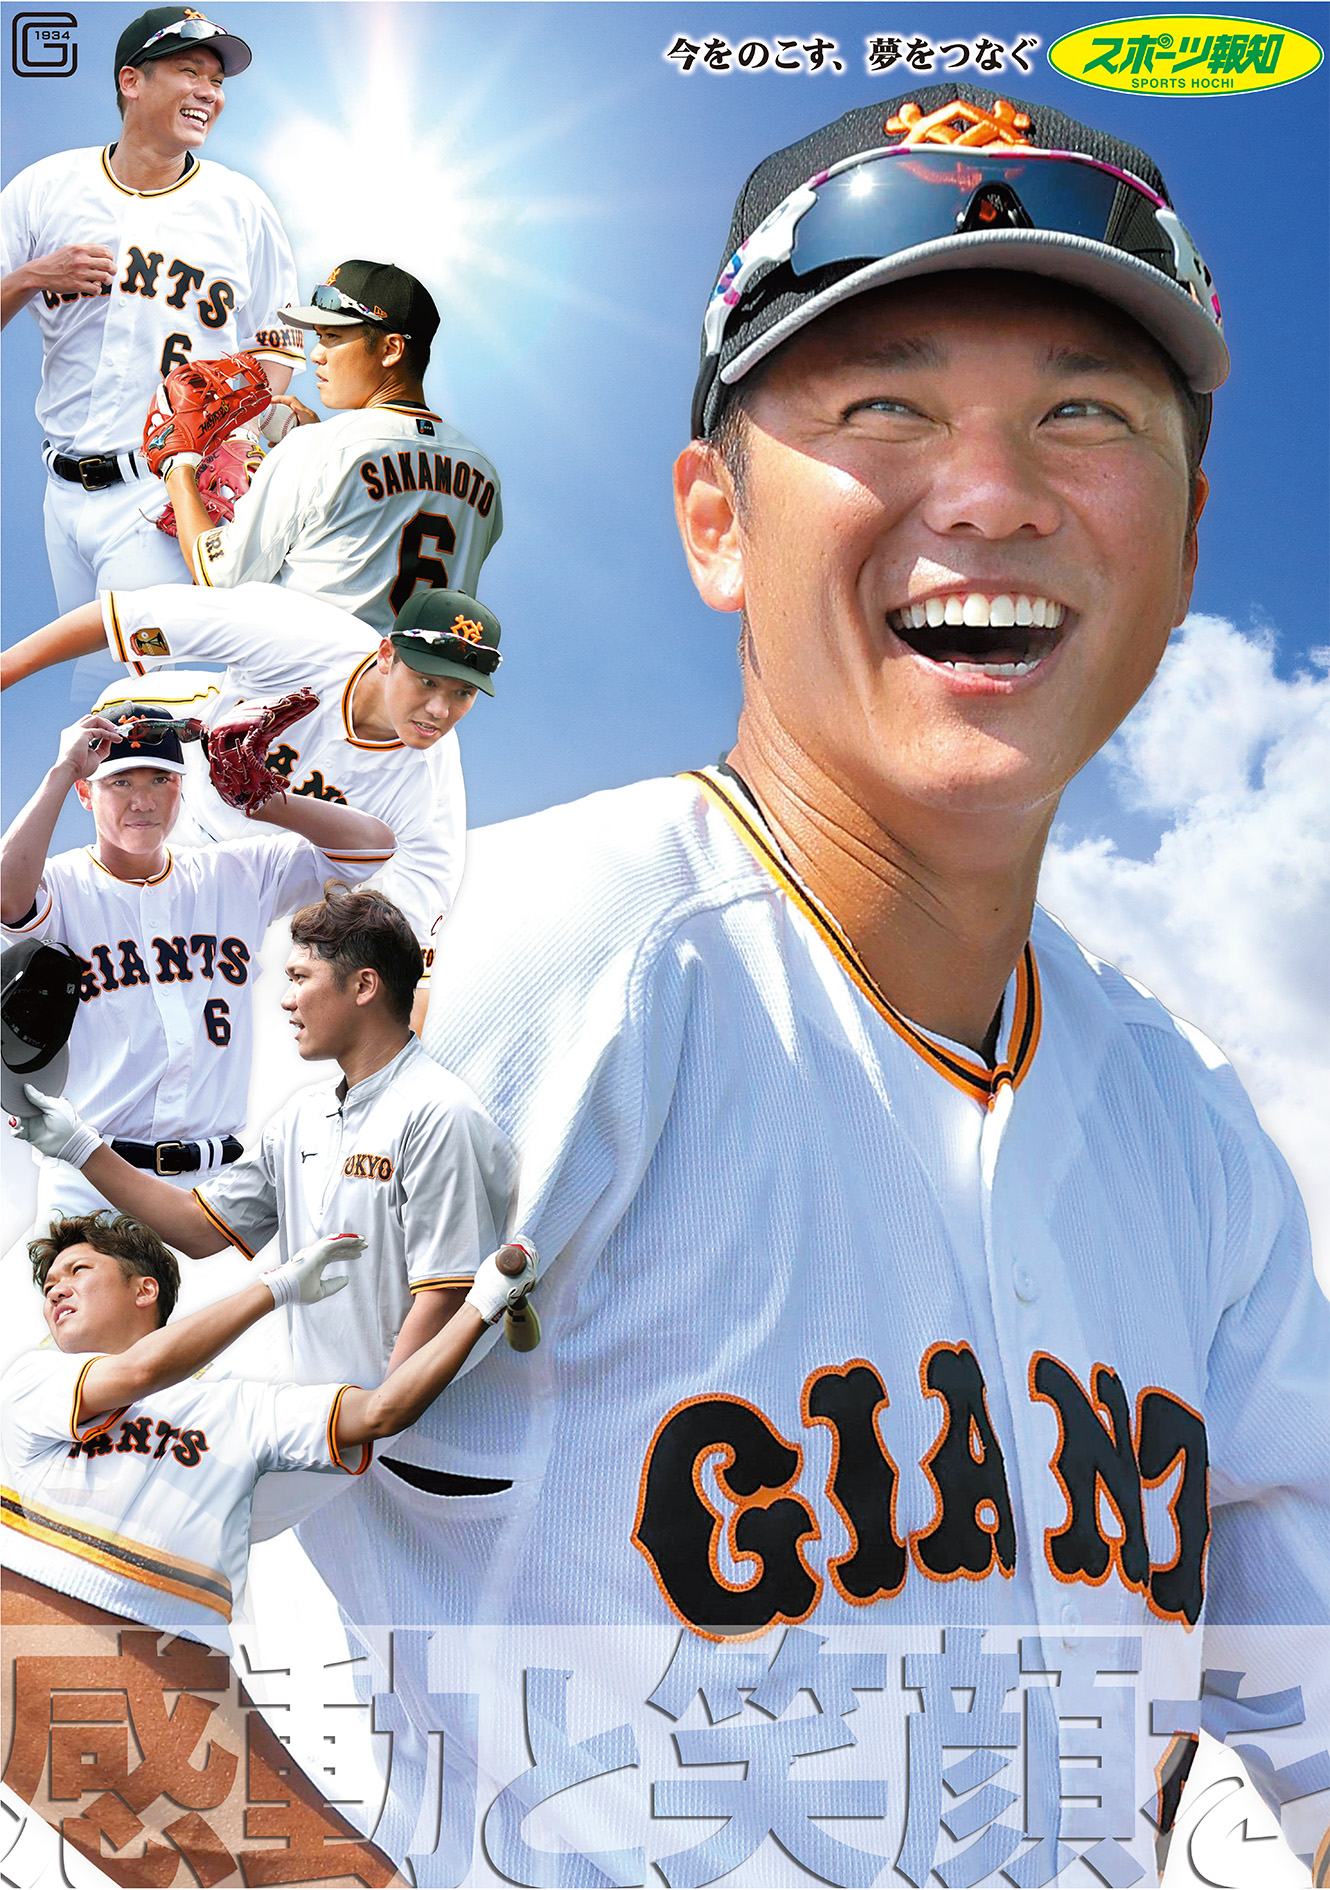 巨人 坂本選手の笑顔がまぶしいスポーツ報知21年販売店用イメージポスターが完成 株式会社報知新聞社のプレスリリース